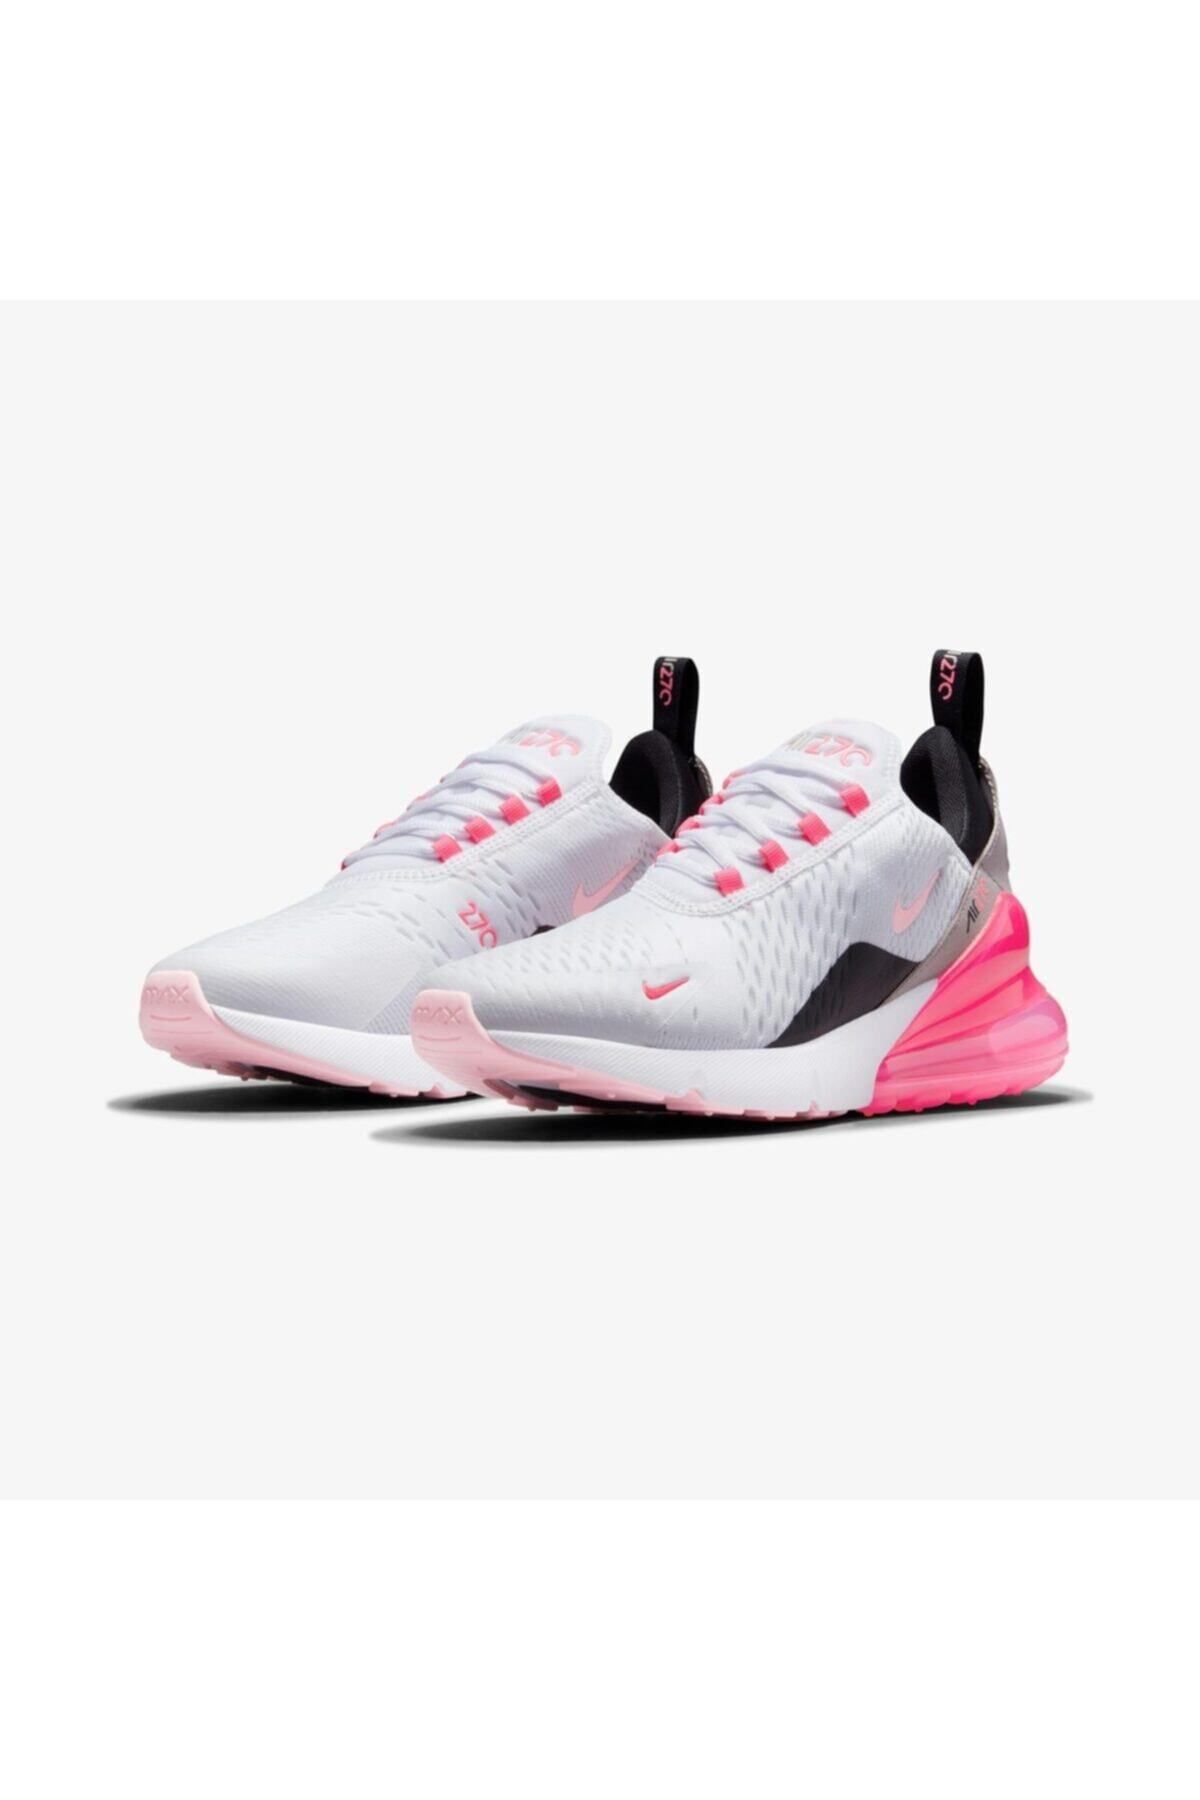 Nike Air Max 270 Ess Spor Ayakkabı Beyaz/pembe Renk Kadın Sneaker Ayakkabı